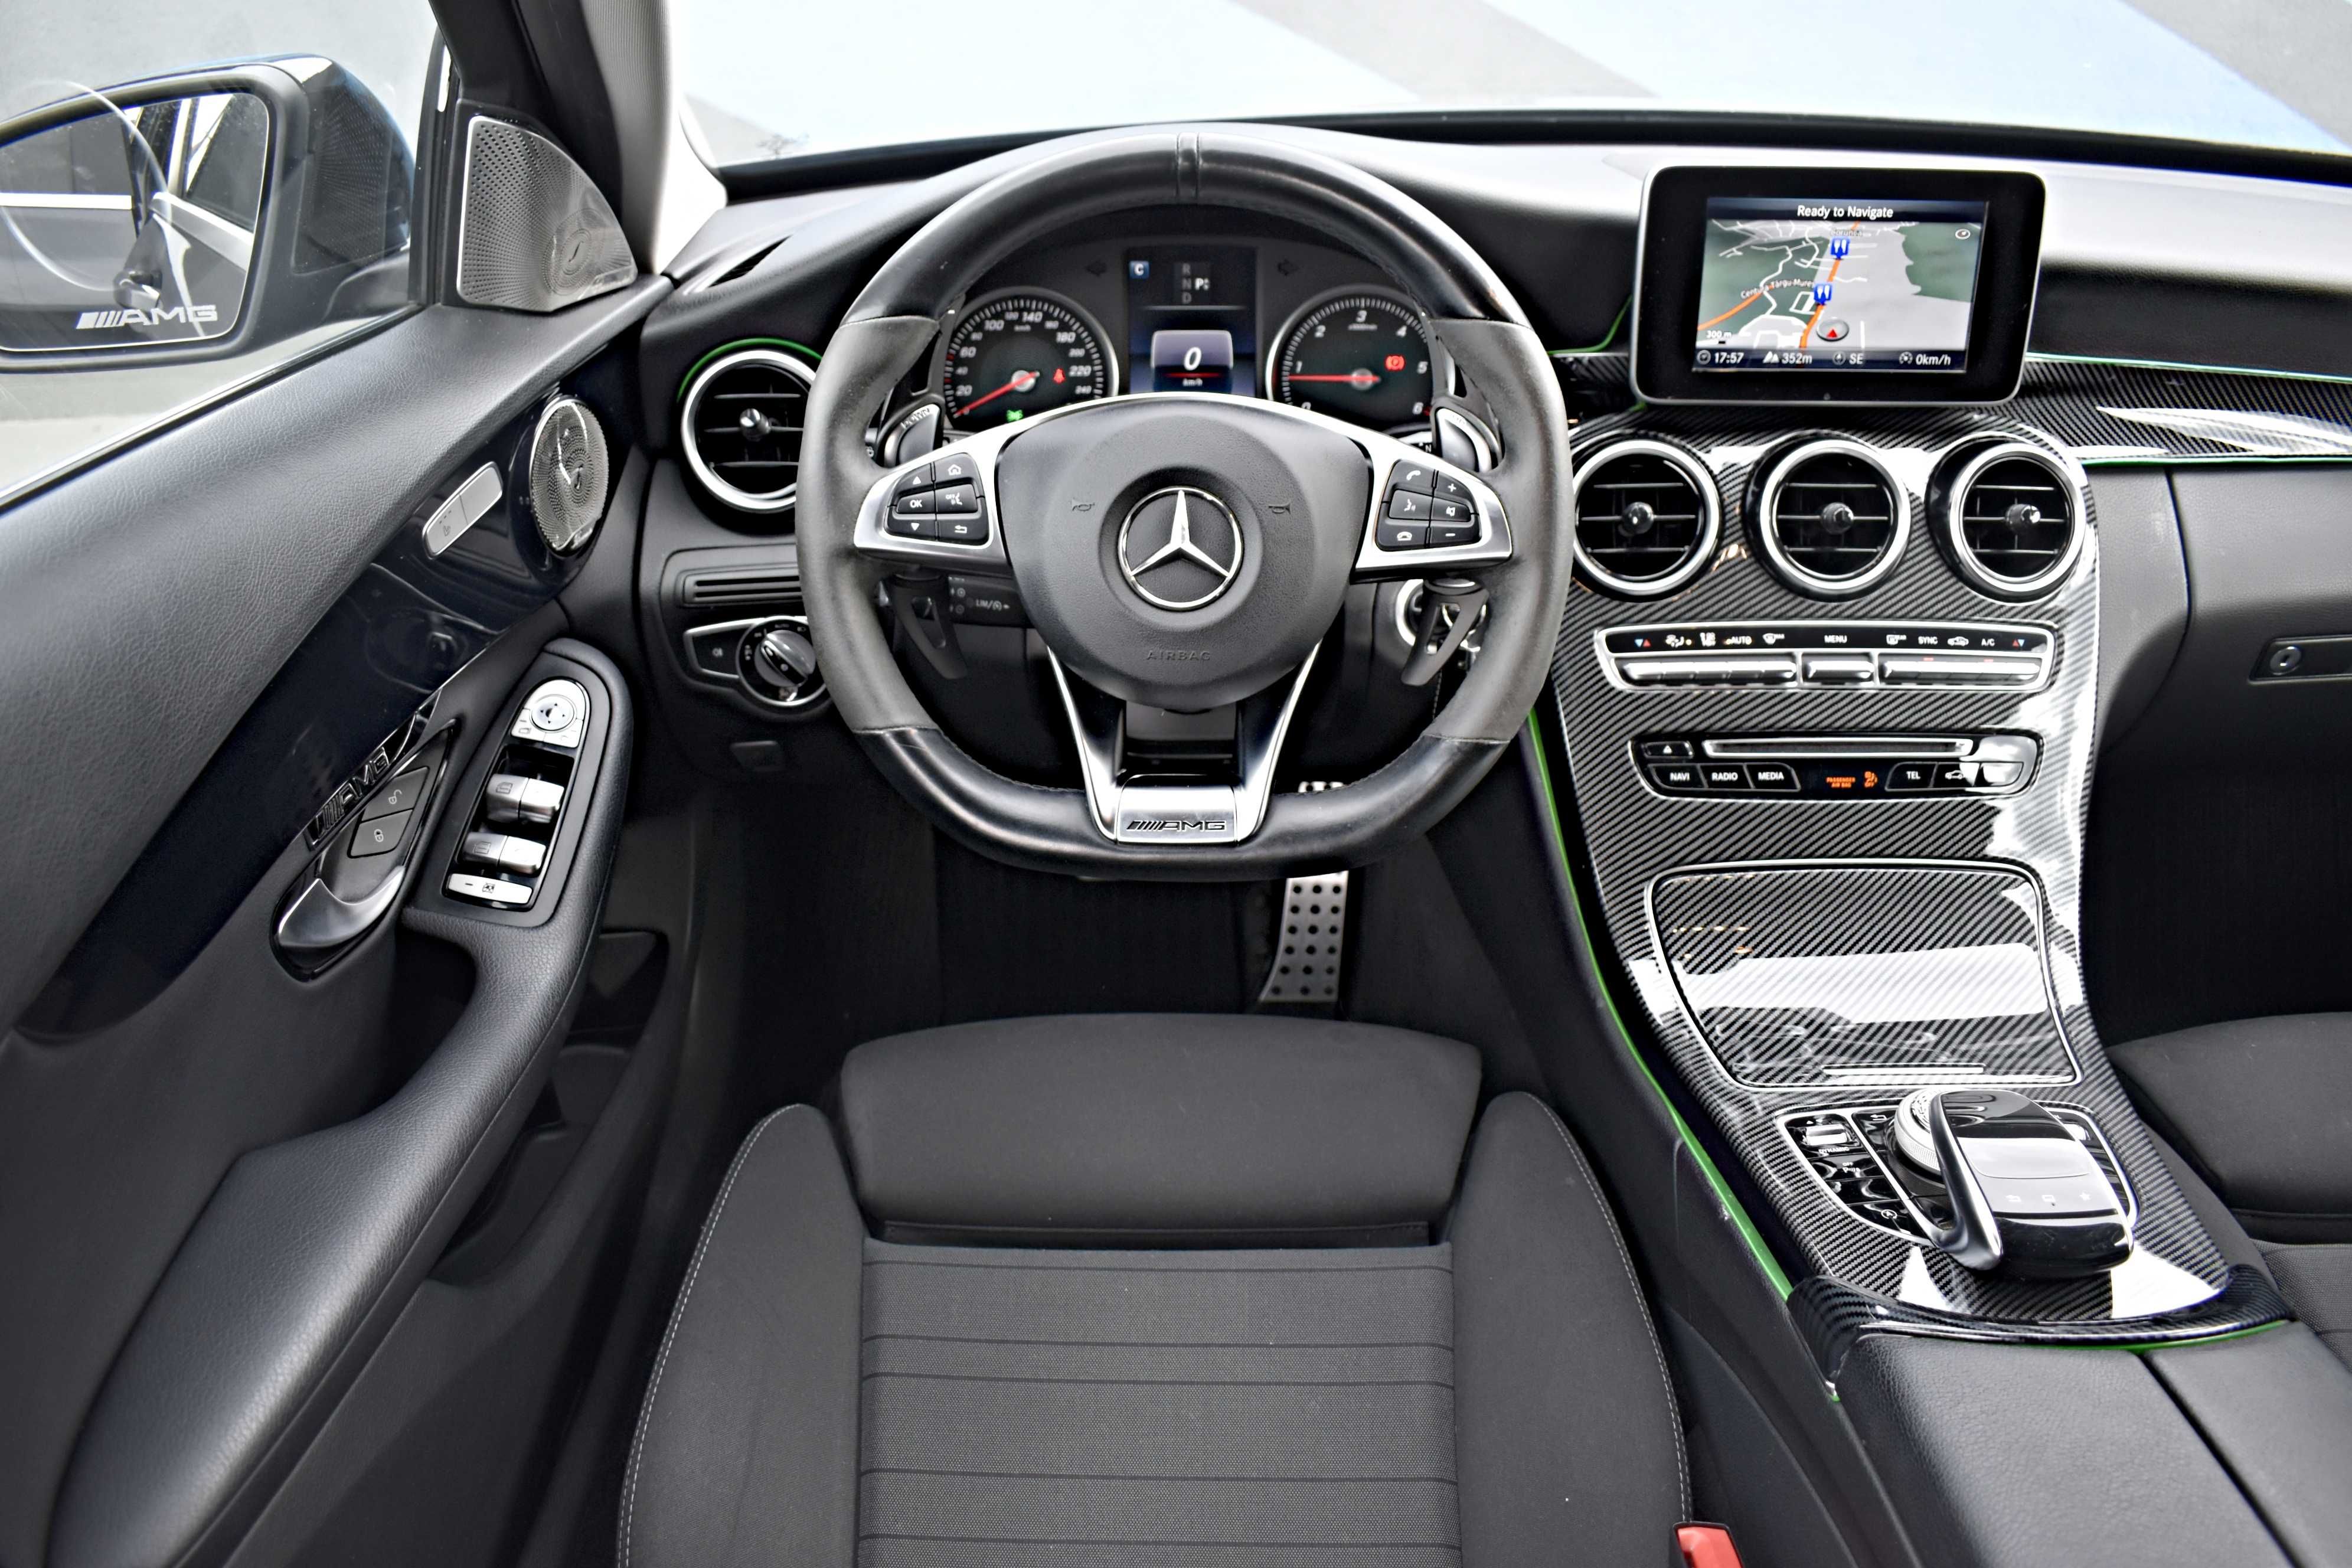 Mercedes C220~Navigatie~2016~LED~AMG~Distronic~Carlig~Bluetec~ 170CP